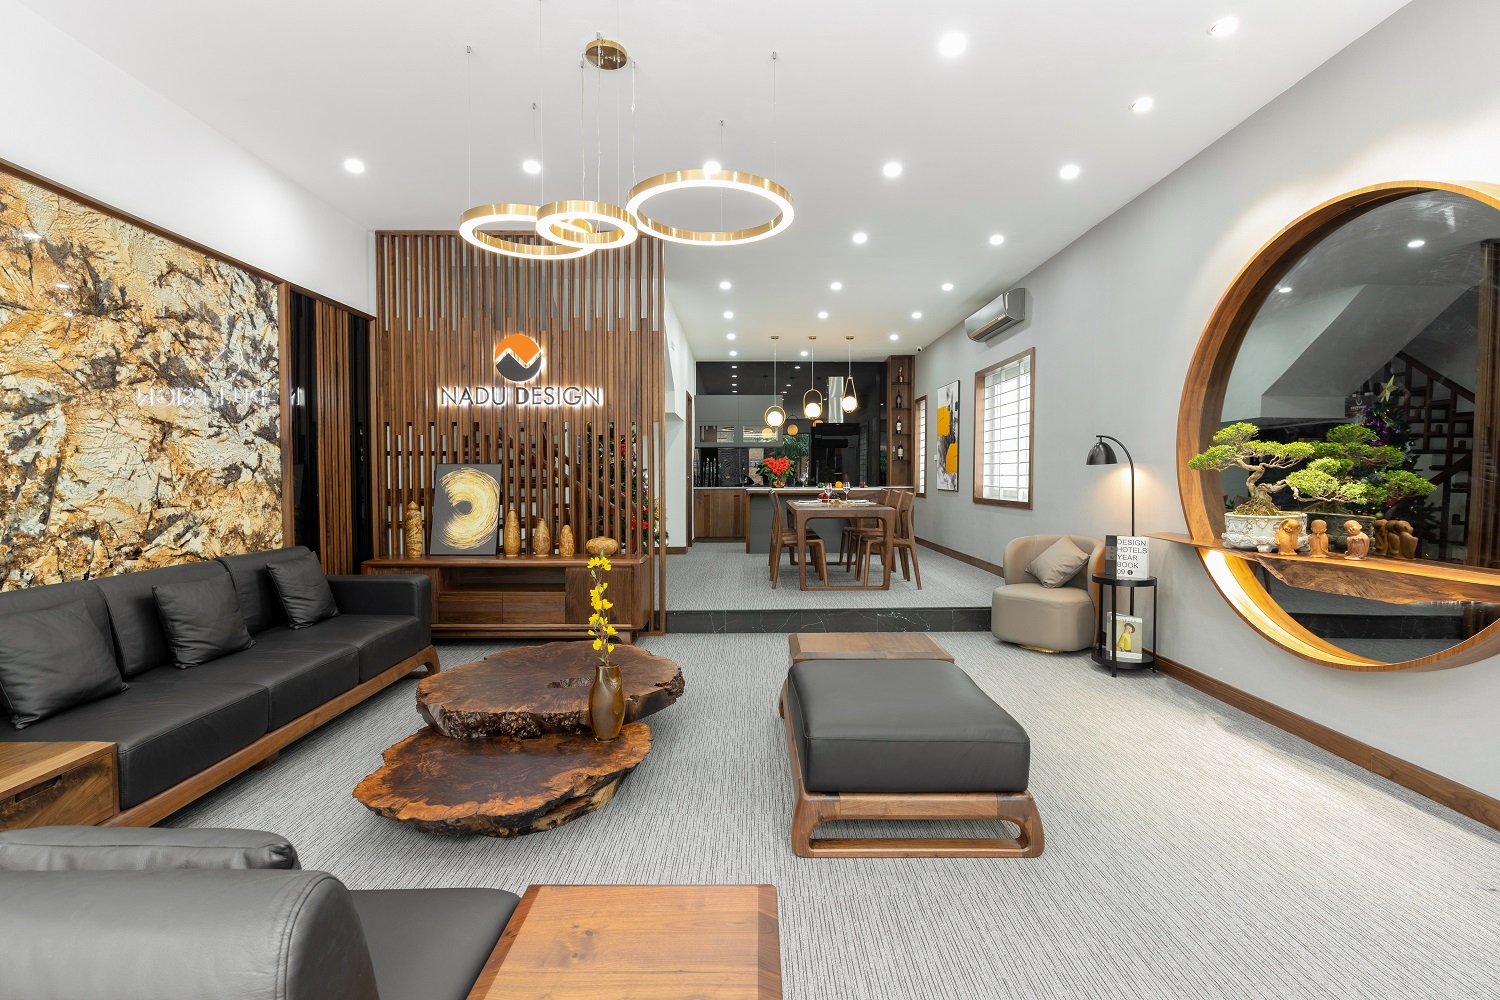 Căn hộ với chi phí phần nội thất gỗ có giá 200 triệu đồng đẹp cuốn hút theo  phong cách tối giản ở Hà Nội